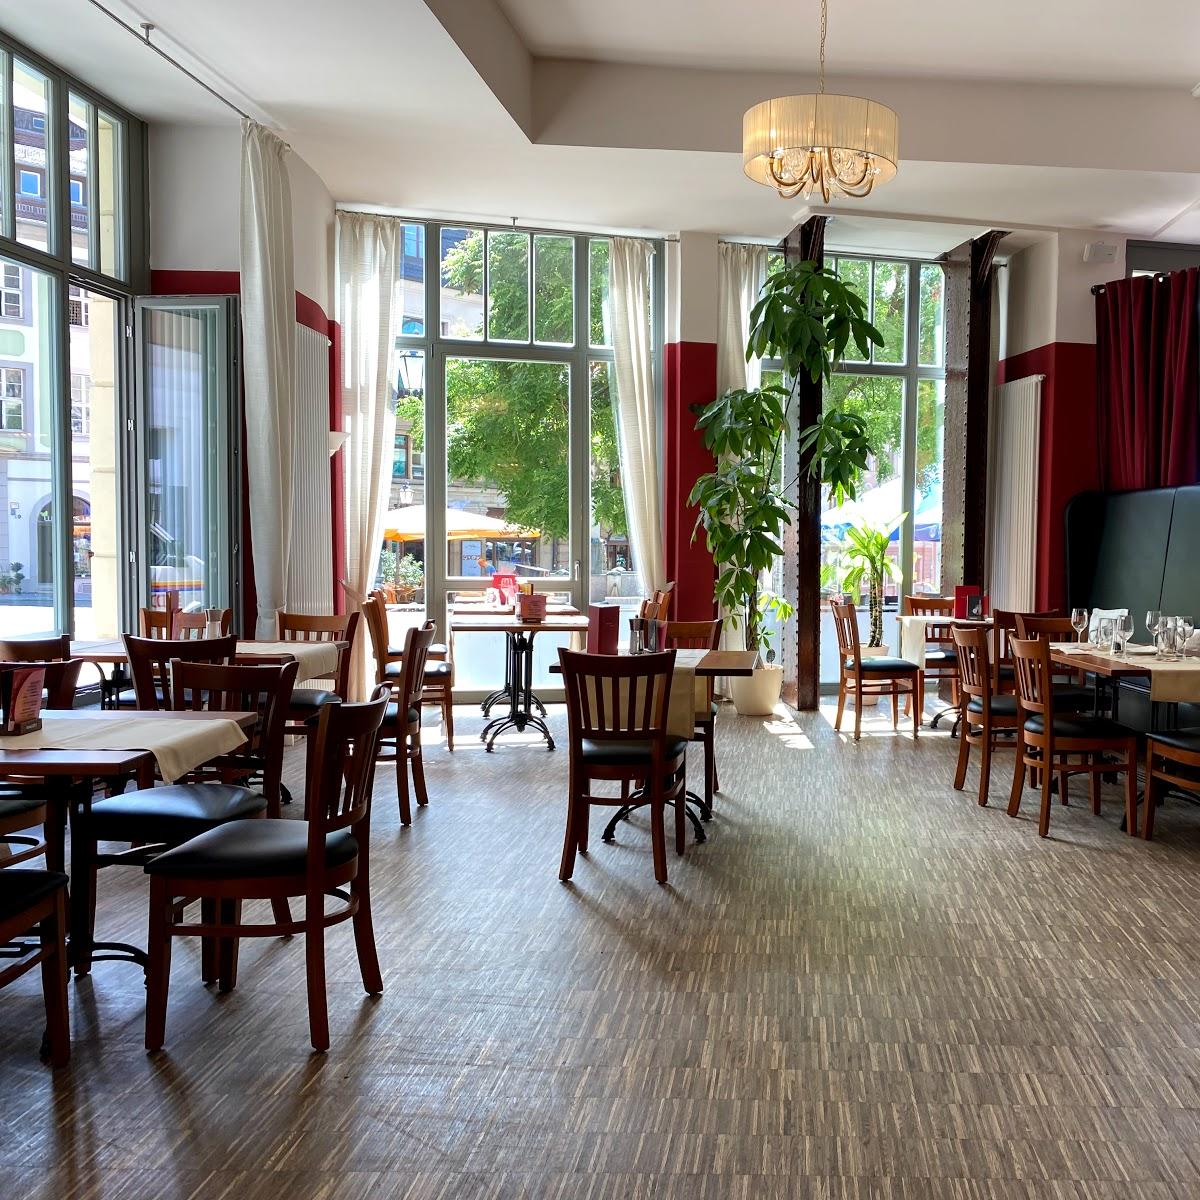 Restaurant "Le due Terre da Salvatore" in Bautzen